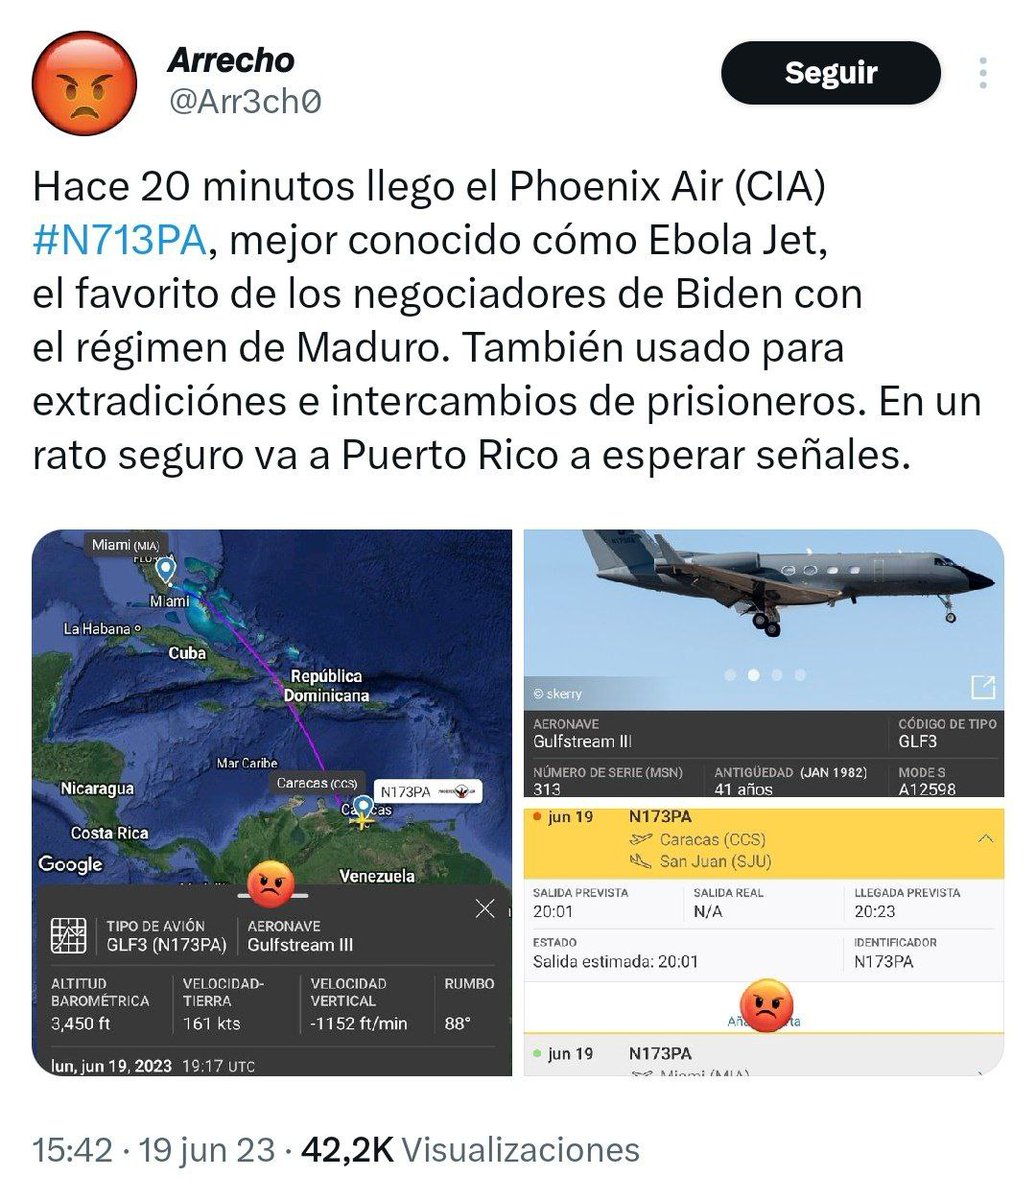 El avión Phoenix Air Gulfstream III habría aterrizado este lunes 19.06.2023 en Caracas, la aeronave es operada por el gobierno de EE.UU. /CIA y es un indicador de que un funcionario estadounidense habría estado en Venezuela.

El avión habría durado menos de 50 minutos en el país.